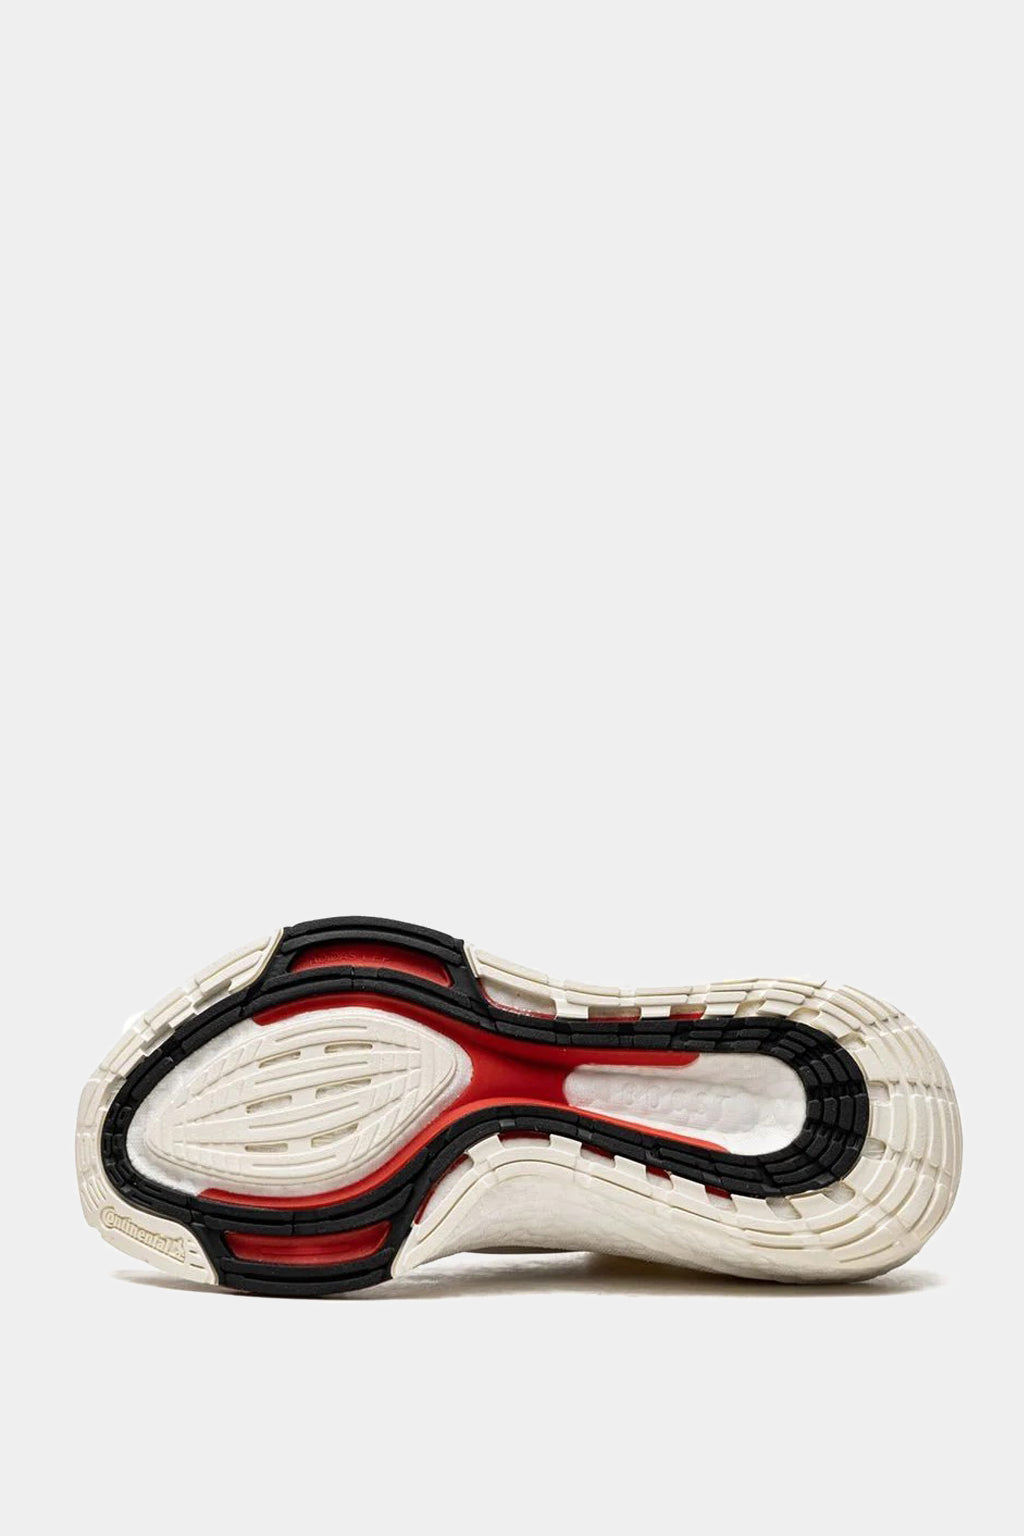 Adidas - Y-3 Ultraboost 21 Sneakers